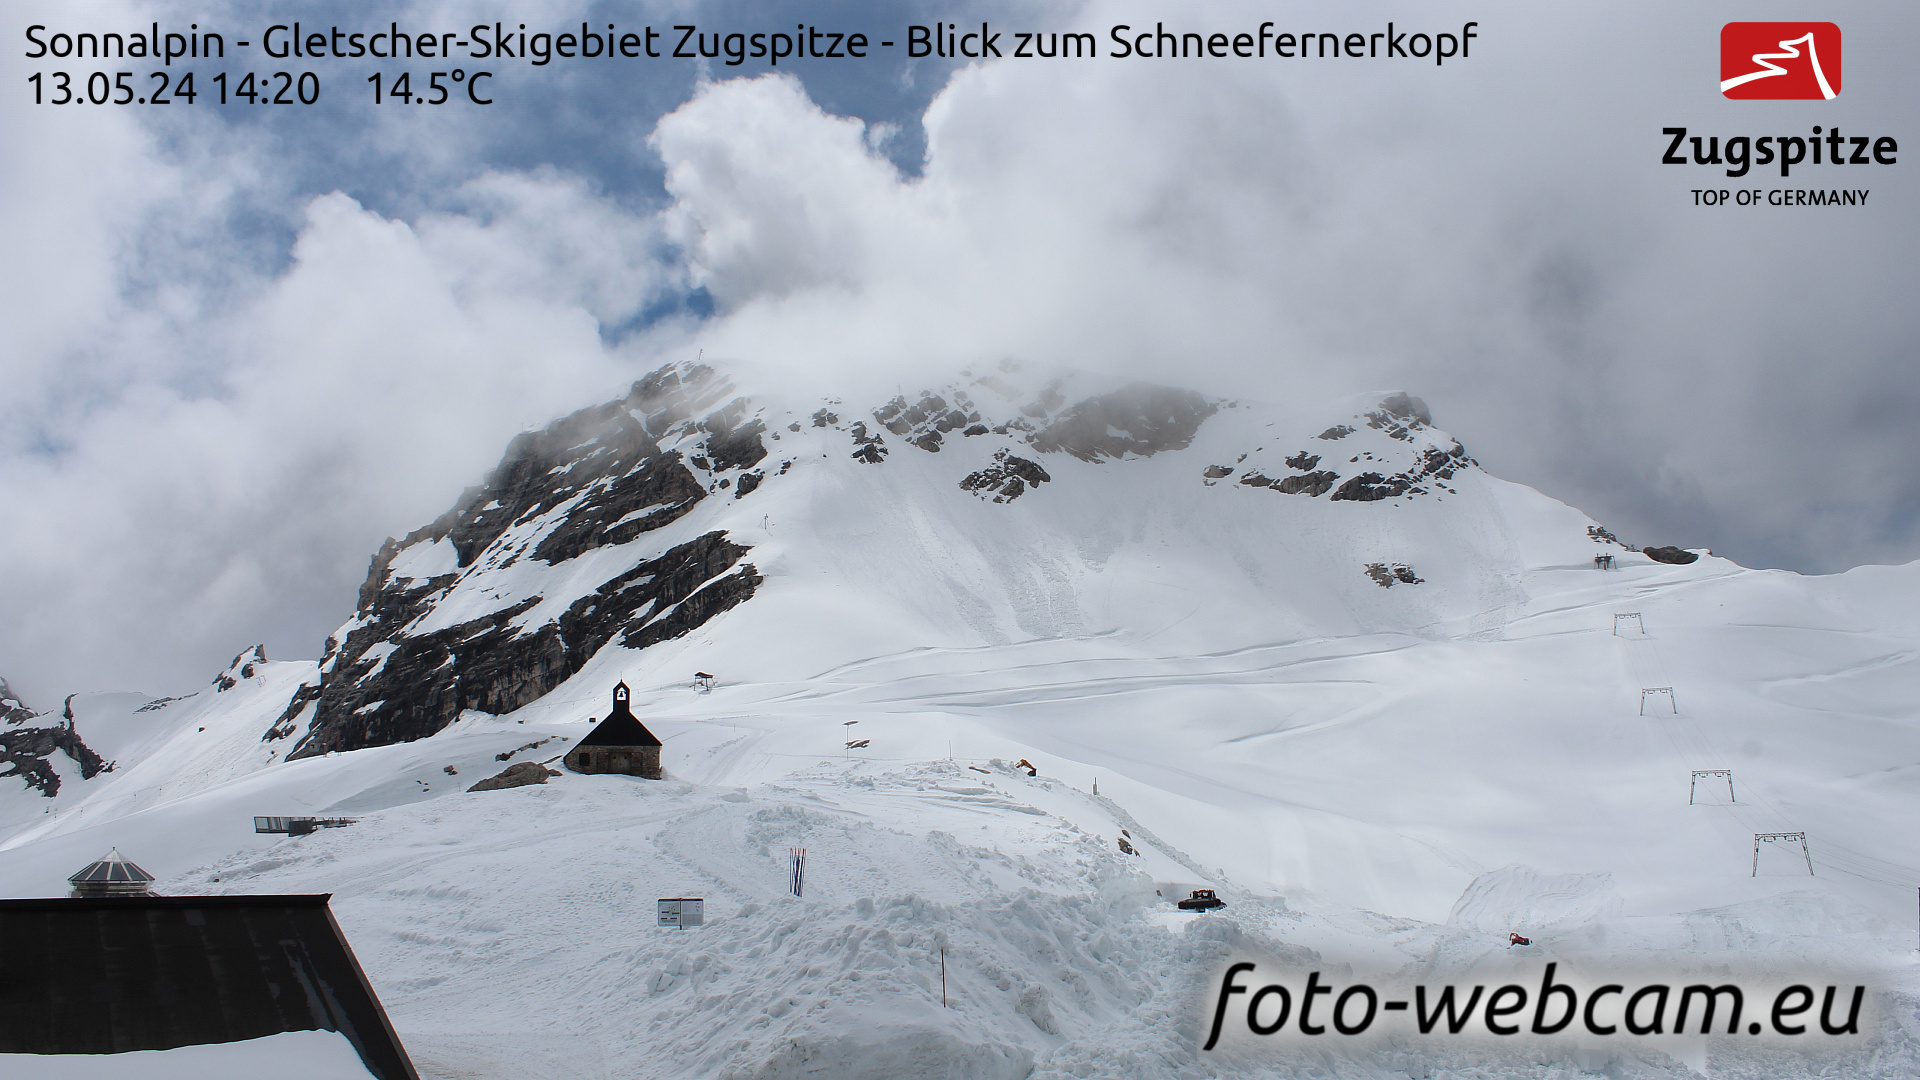 Zugspitze So. 14:24